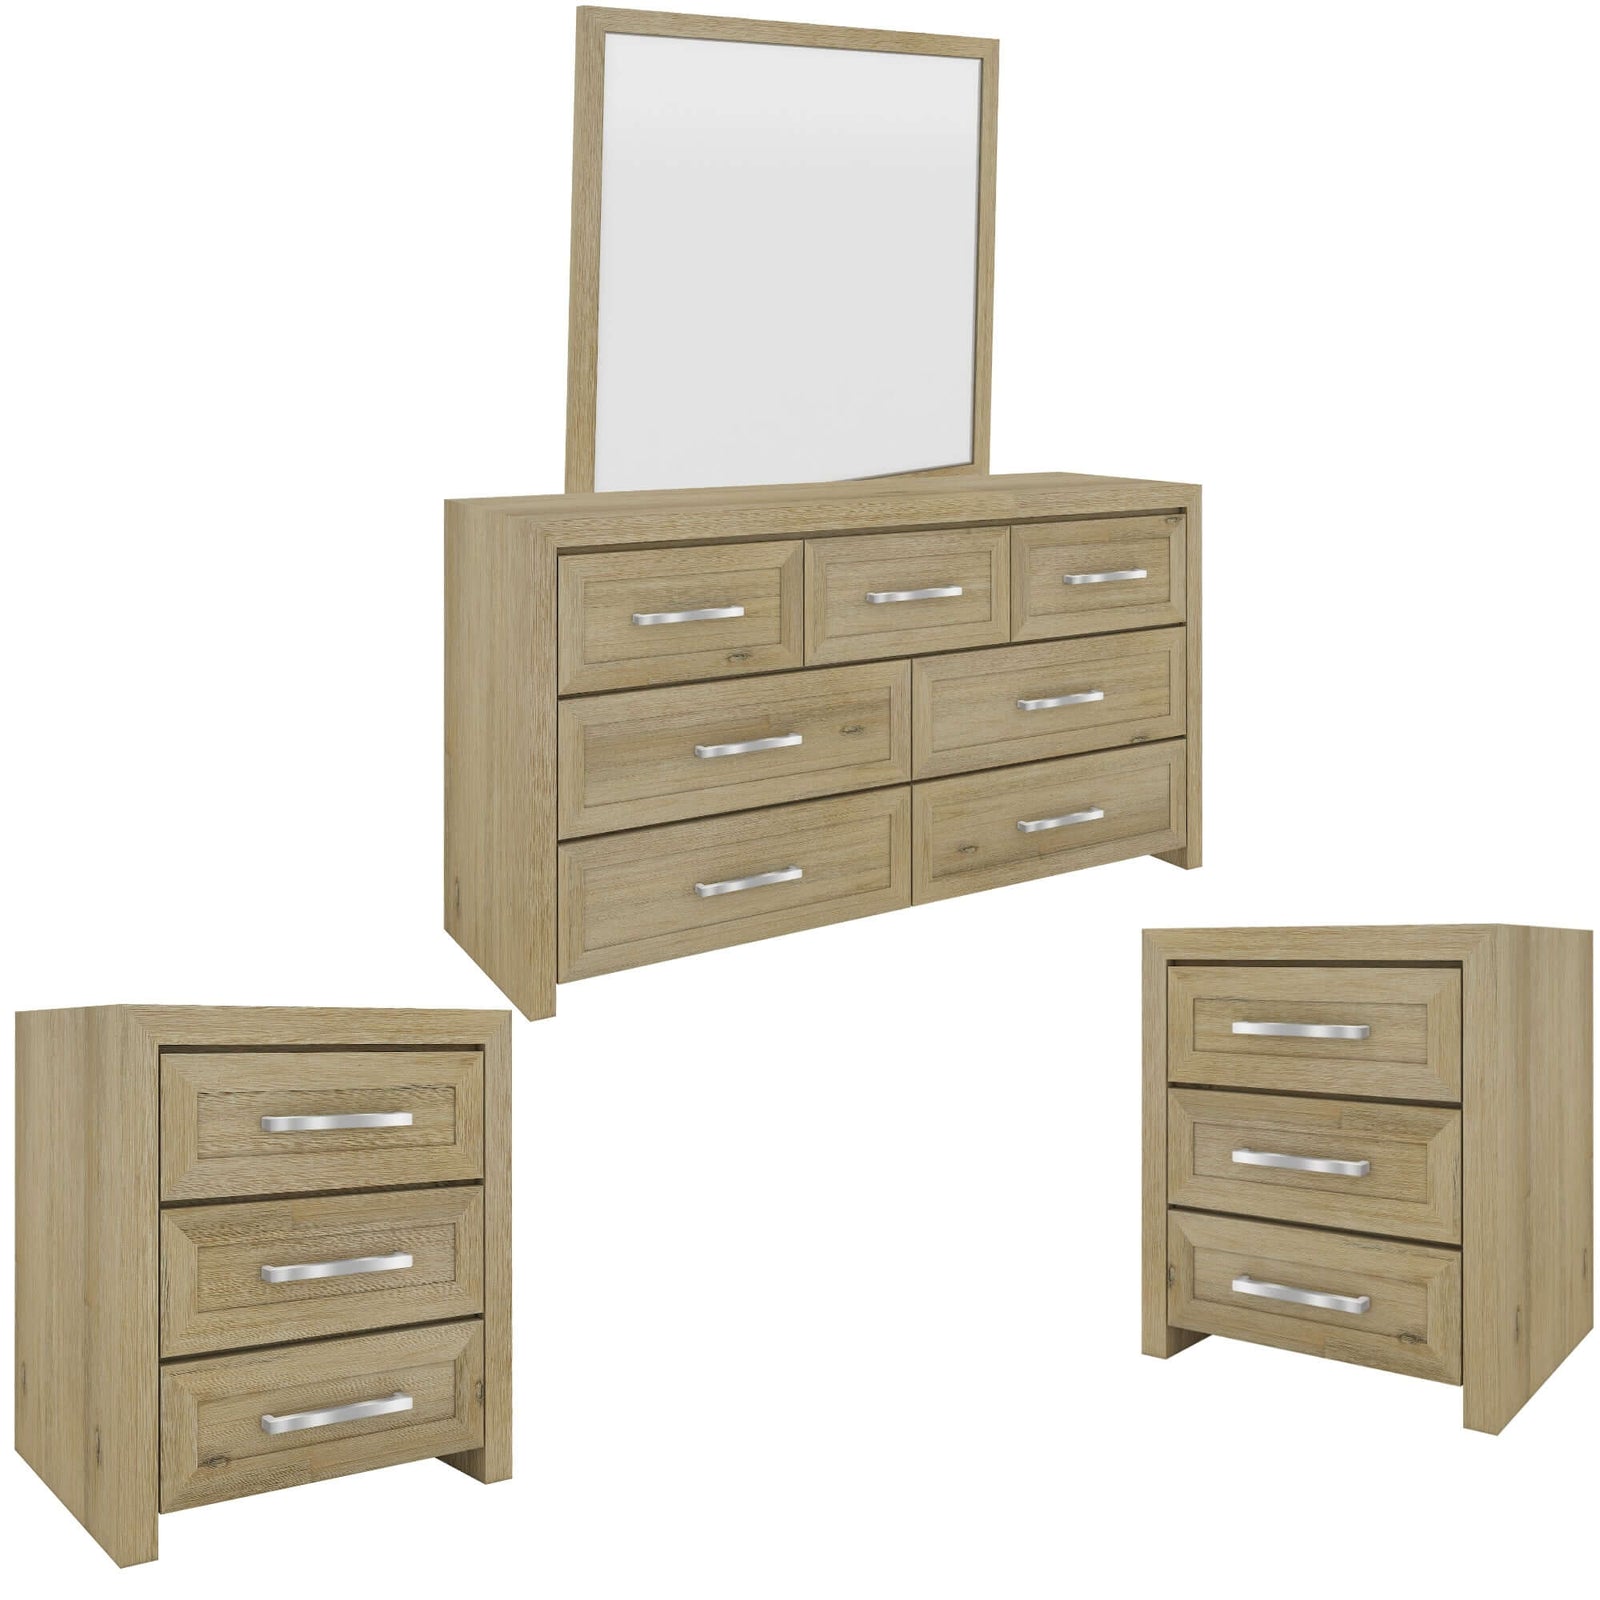 Gracelyn Set of 2 Bedside 3 Drawers Dresser Mirror Bedroom Cabinet - Smoke-Upinteriors